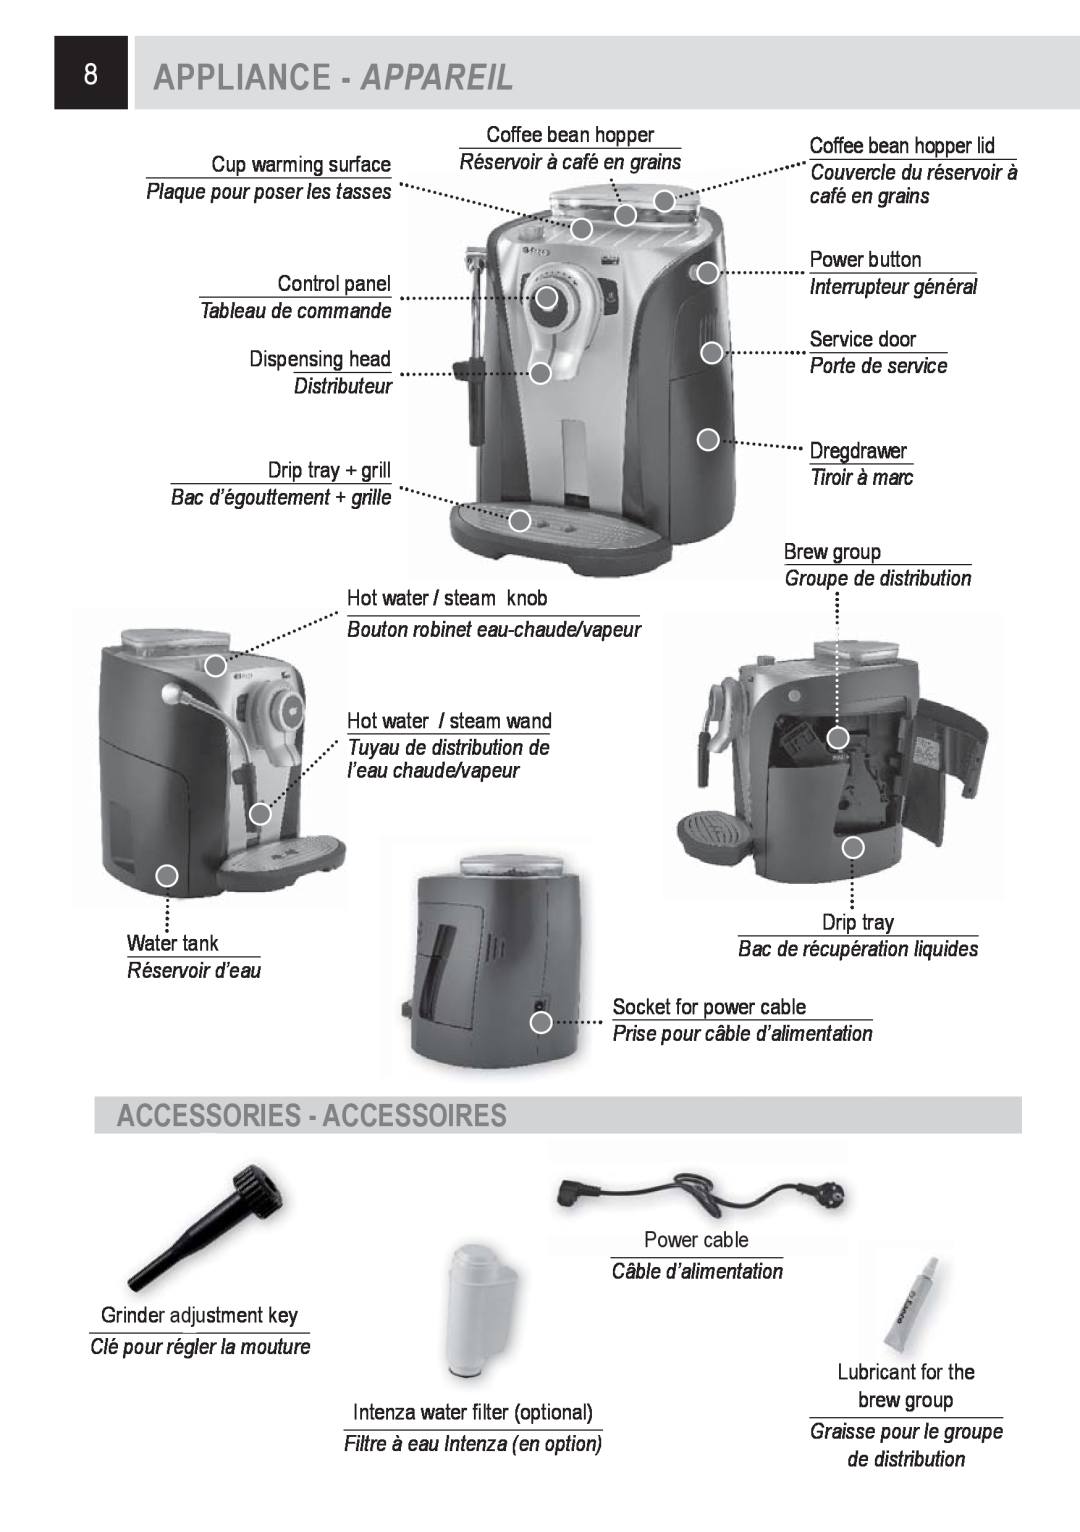 Saeco Coffee Makers SUP0310 manual 8APPLIANCE - APPAREIL, Accessories - Accessoires, Tableau de commande, Distributeur 